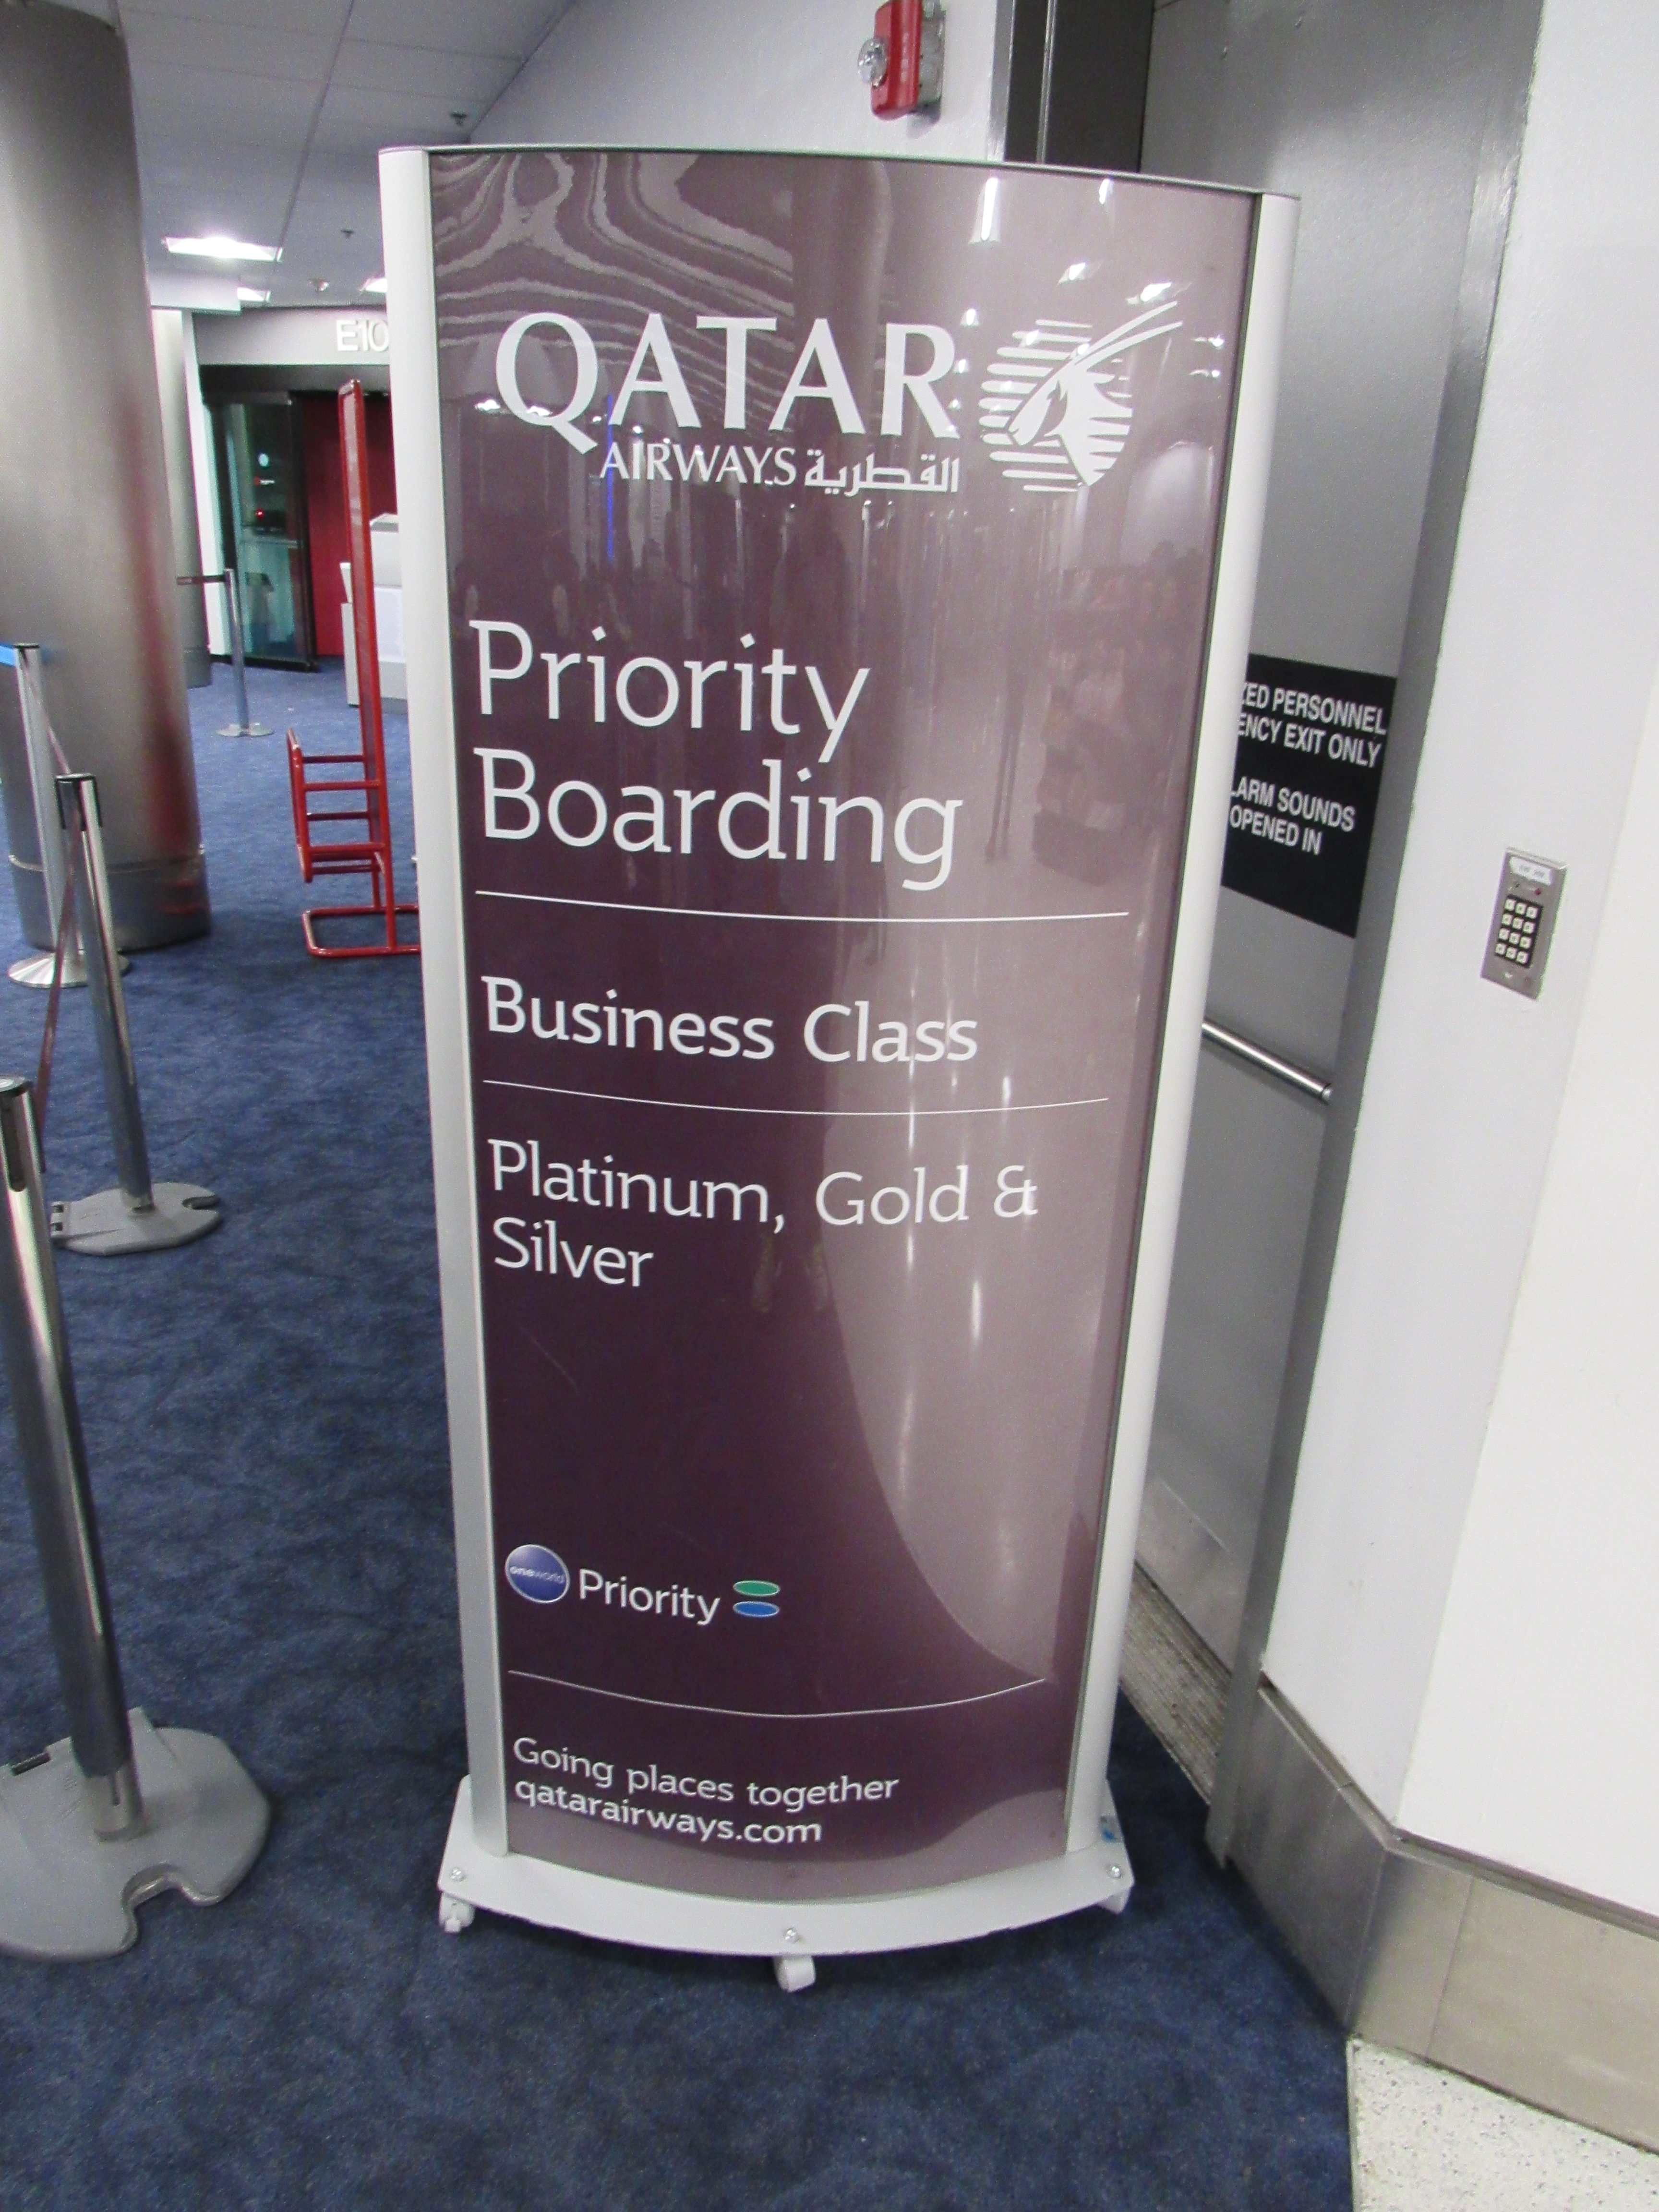 Qatar Airways Boarding